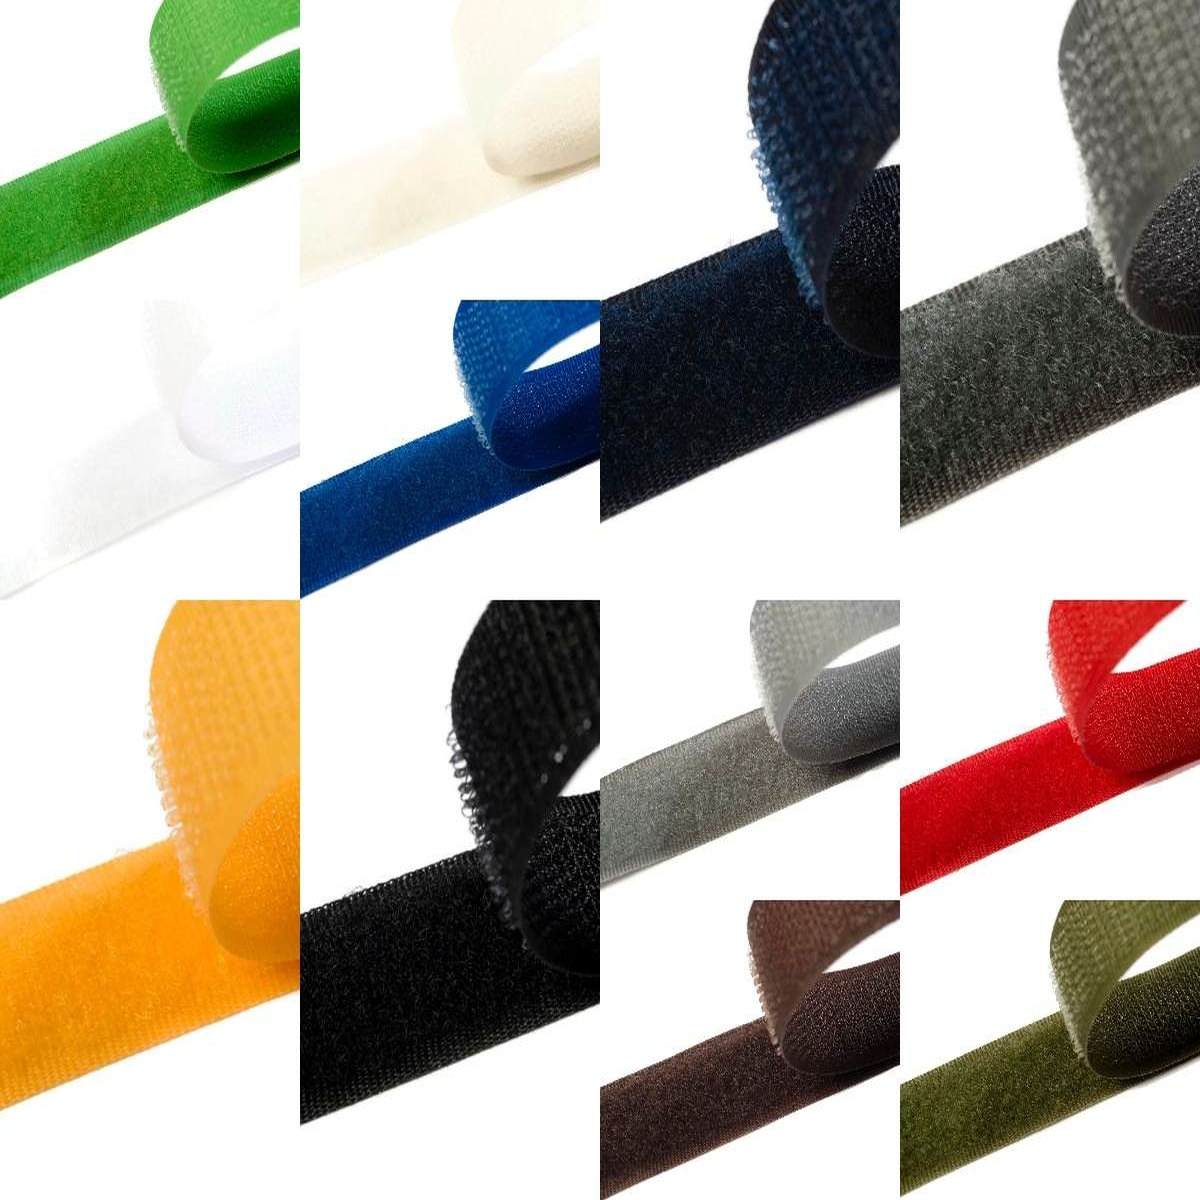 Klettband zum aufnähen 38mm breit in 12 Farben